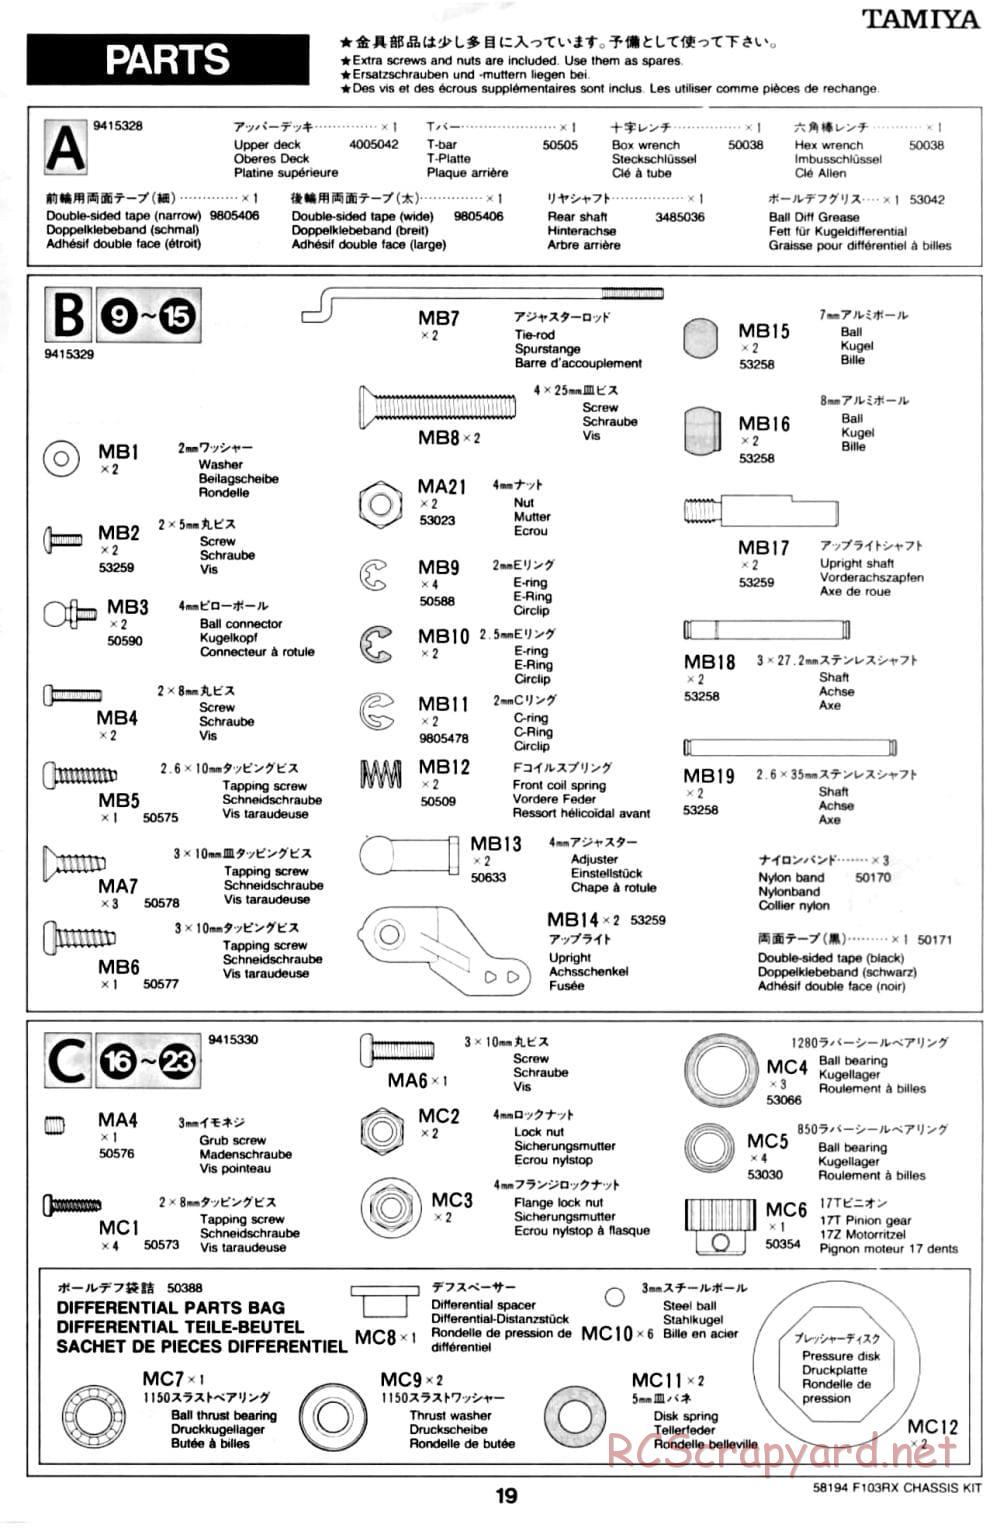 Tamiya - F103RX Chassis - Manual - Page 19